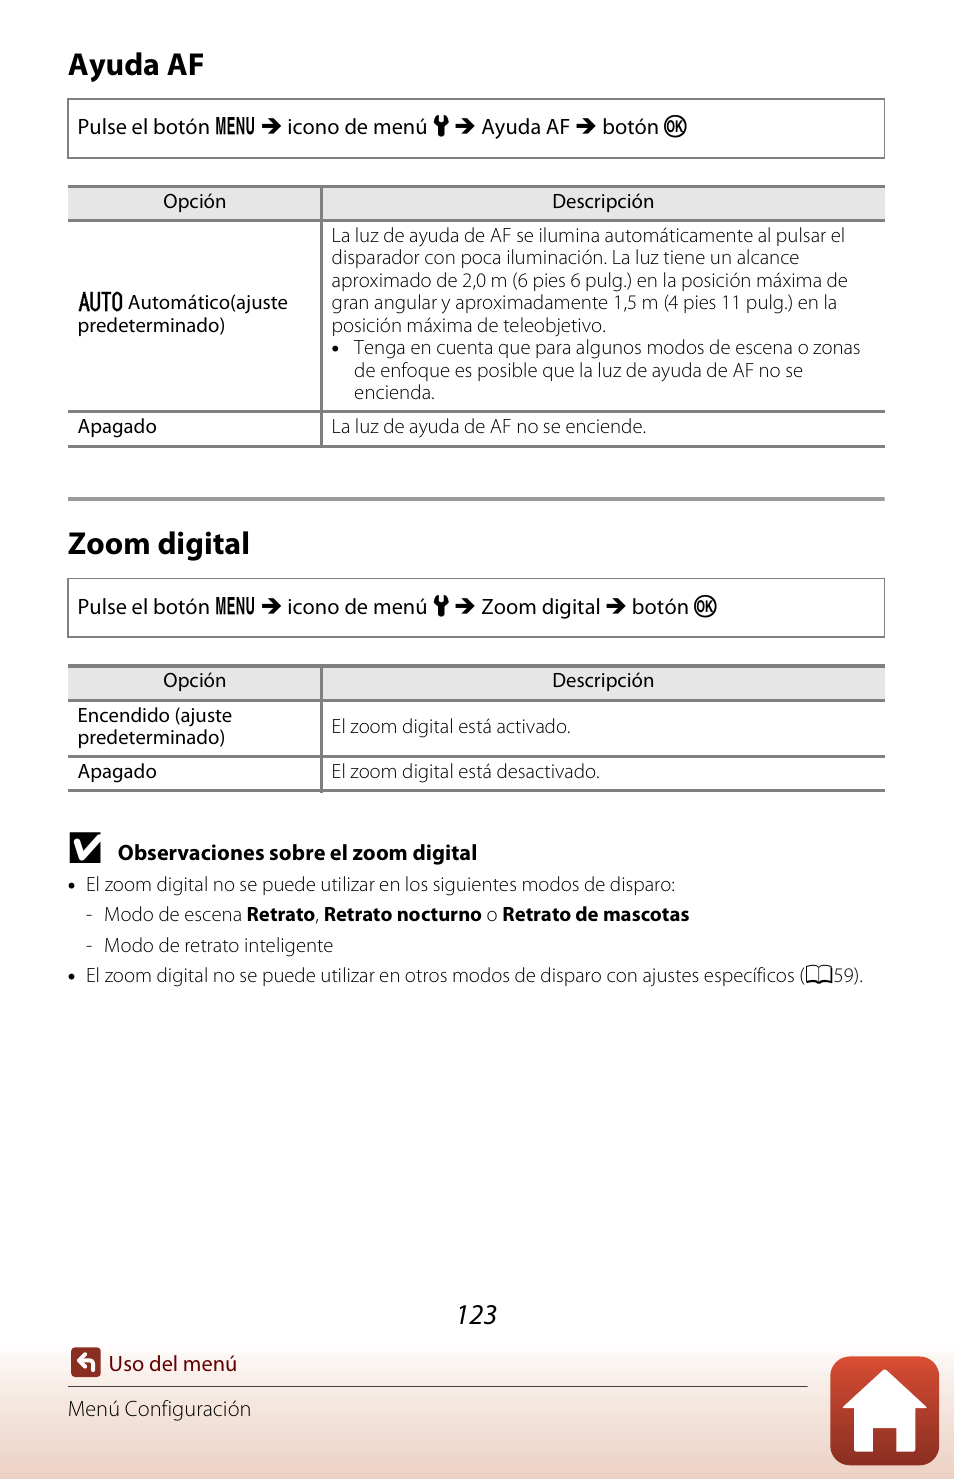 Ayuda af, Zoom digital, A123) | A123, Ayuda af zoom digital | Nikon Coolpix A300 Manual del usuario | Página 138 / 179